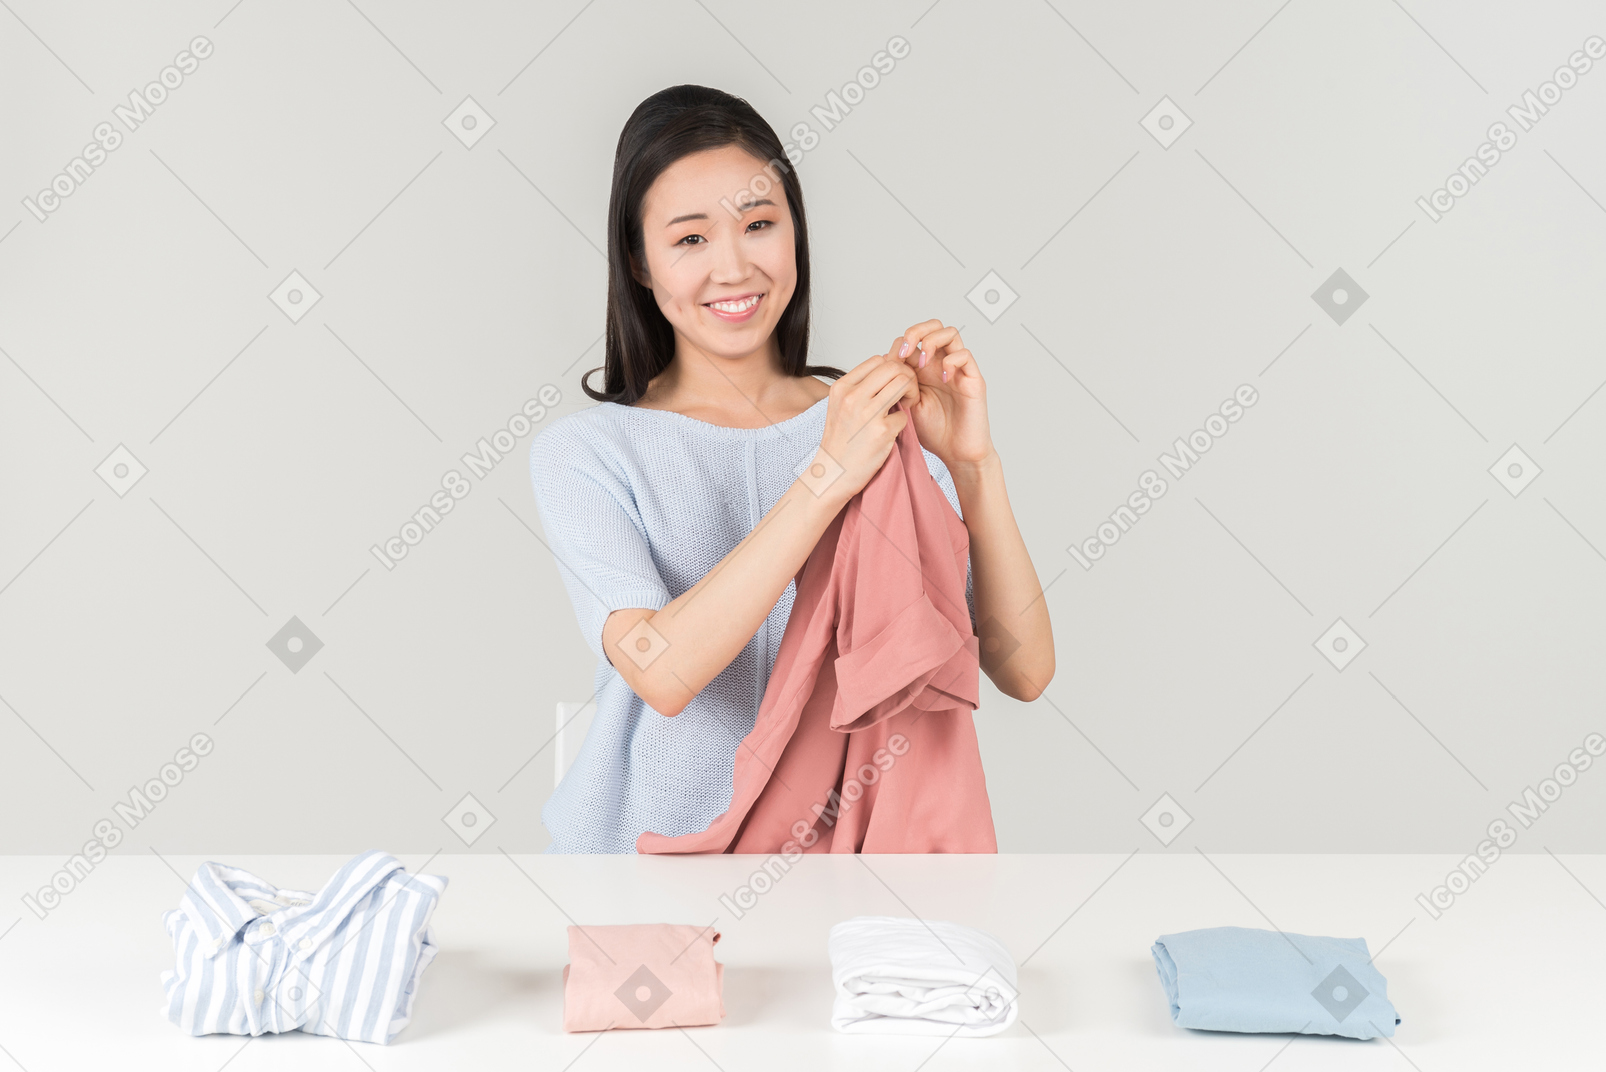 私のピンクのブラウスでそれを洗うことは良いアイデアのように聞こえることを決定する前に、このシャツは白だった